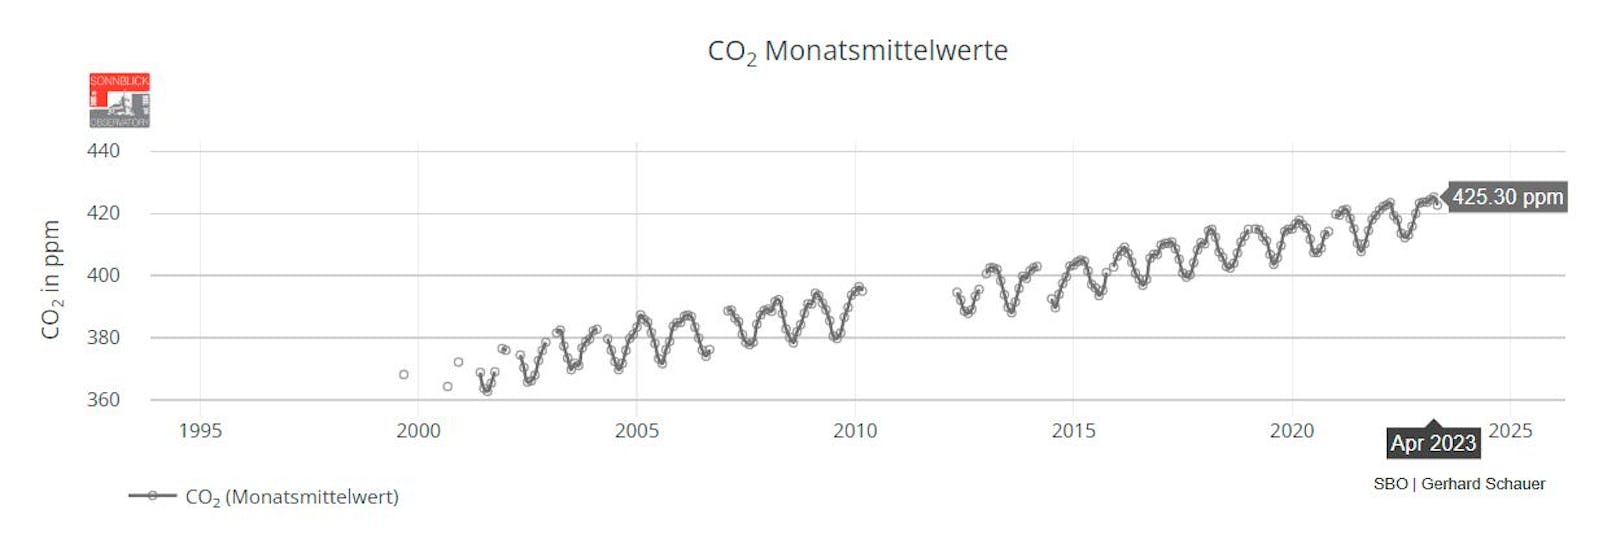 CO2-Messkurve des Sonnblick-Observatoriums. Obwohl erst seit 2001 aufgezeichnet wird, ist der weltweite Trend auch hier klar ersichtlich.